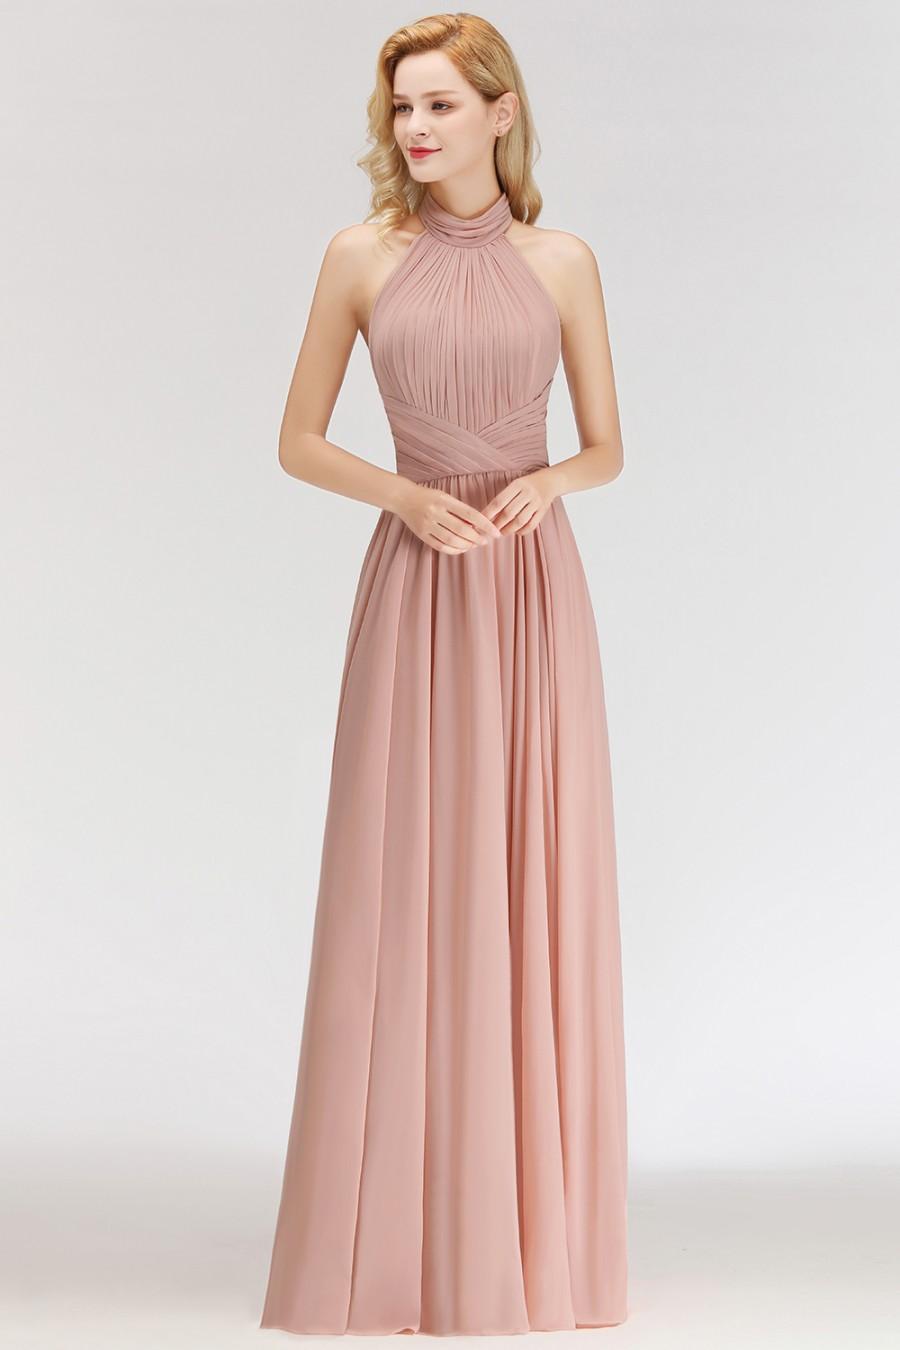 زفاف - Modern Rosa Long Chiffon Brautjungfernkleider Etuikleid Kleider für Brautjunfern Modellnummer: BM0043